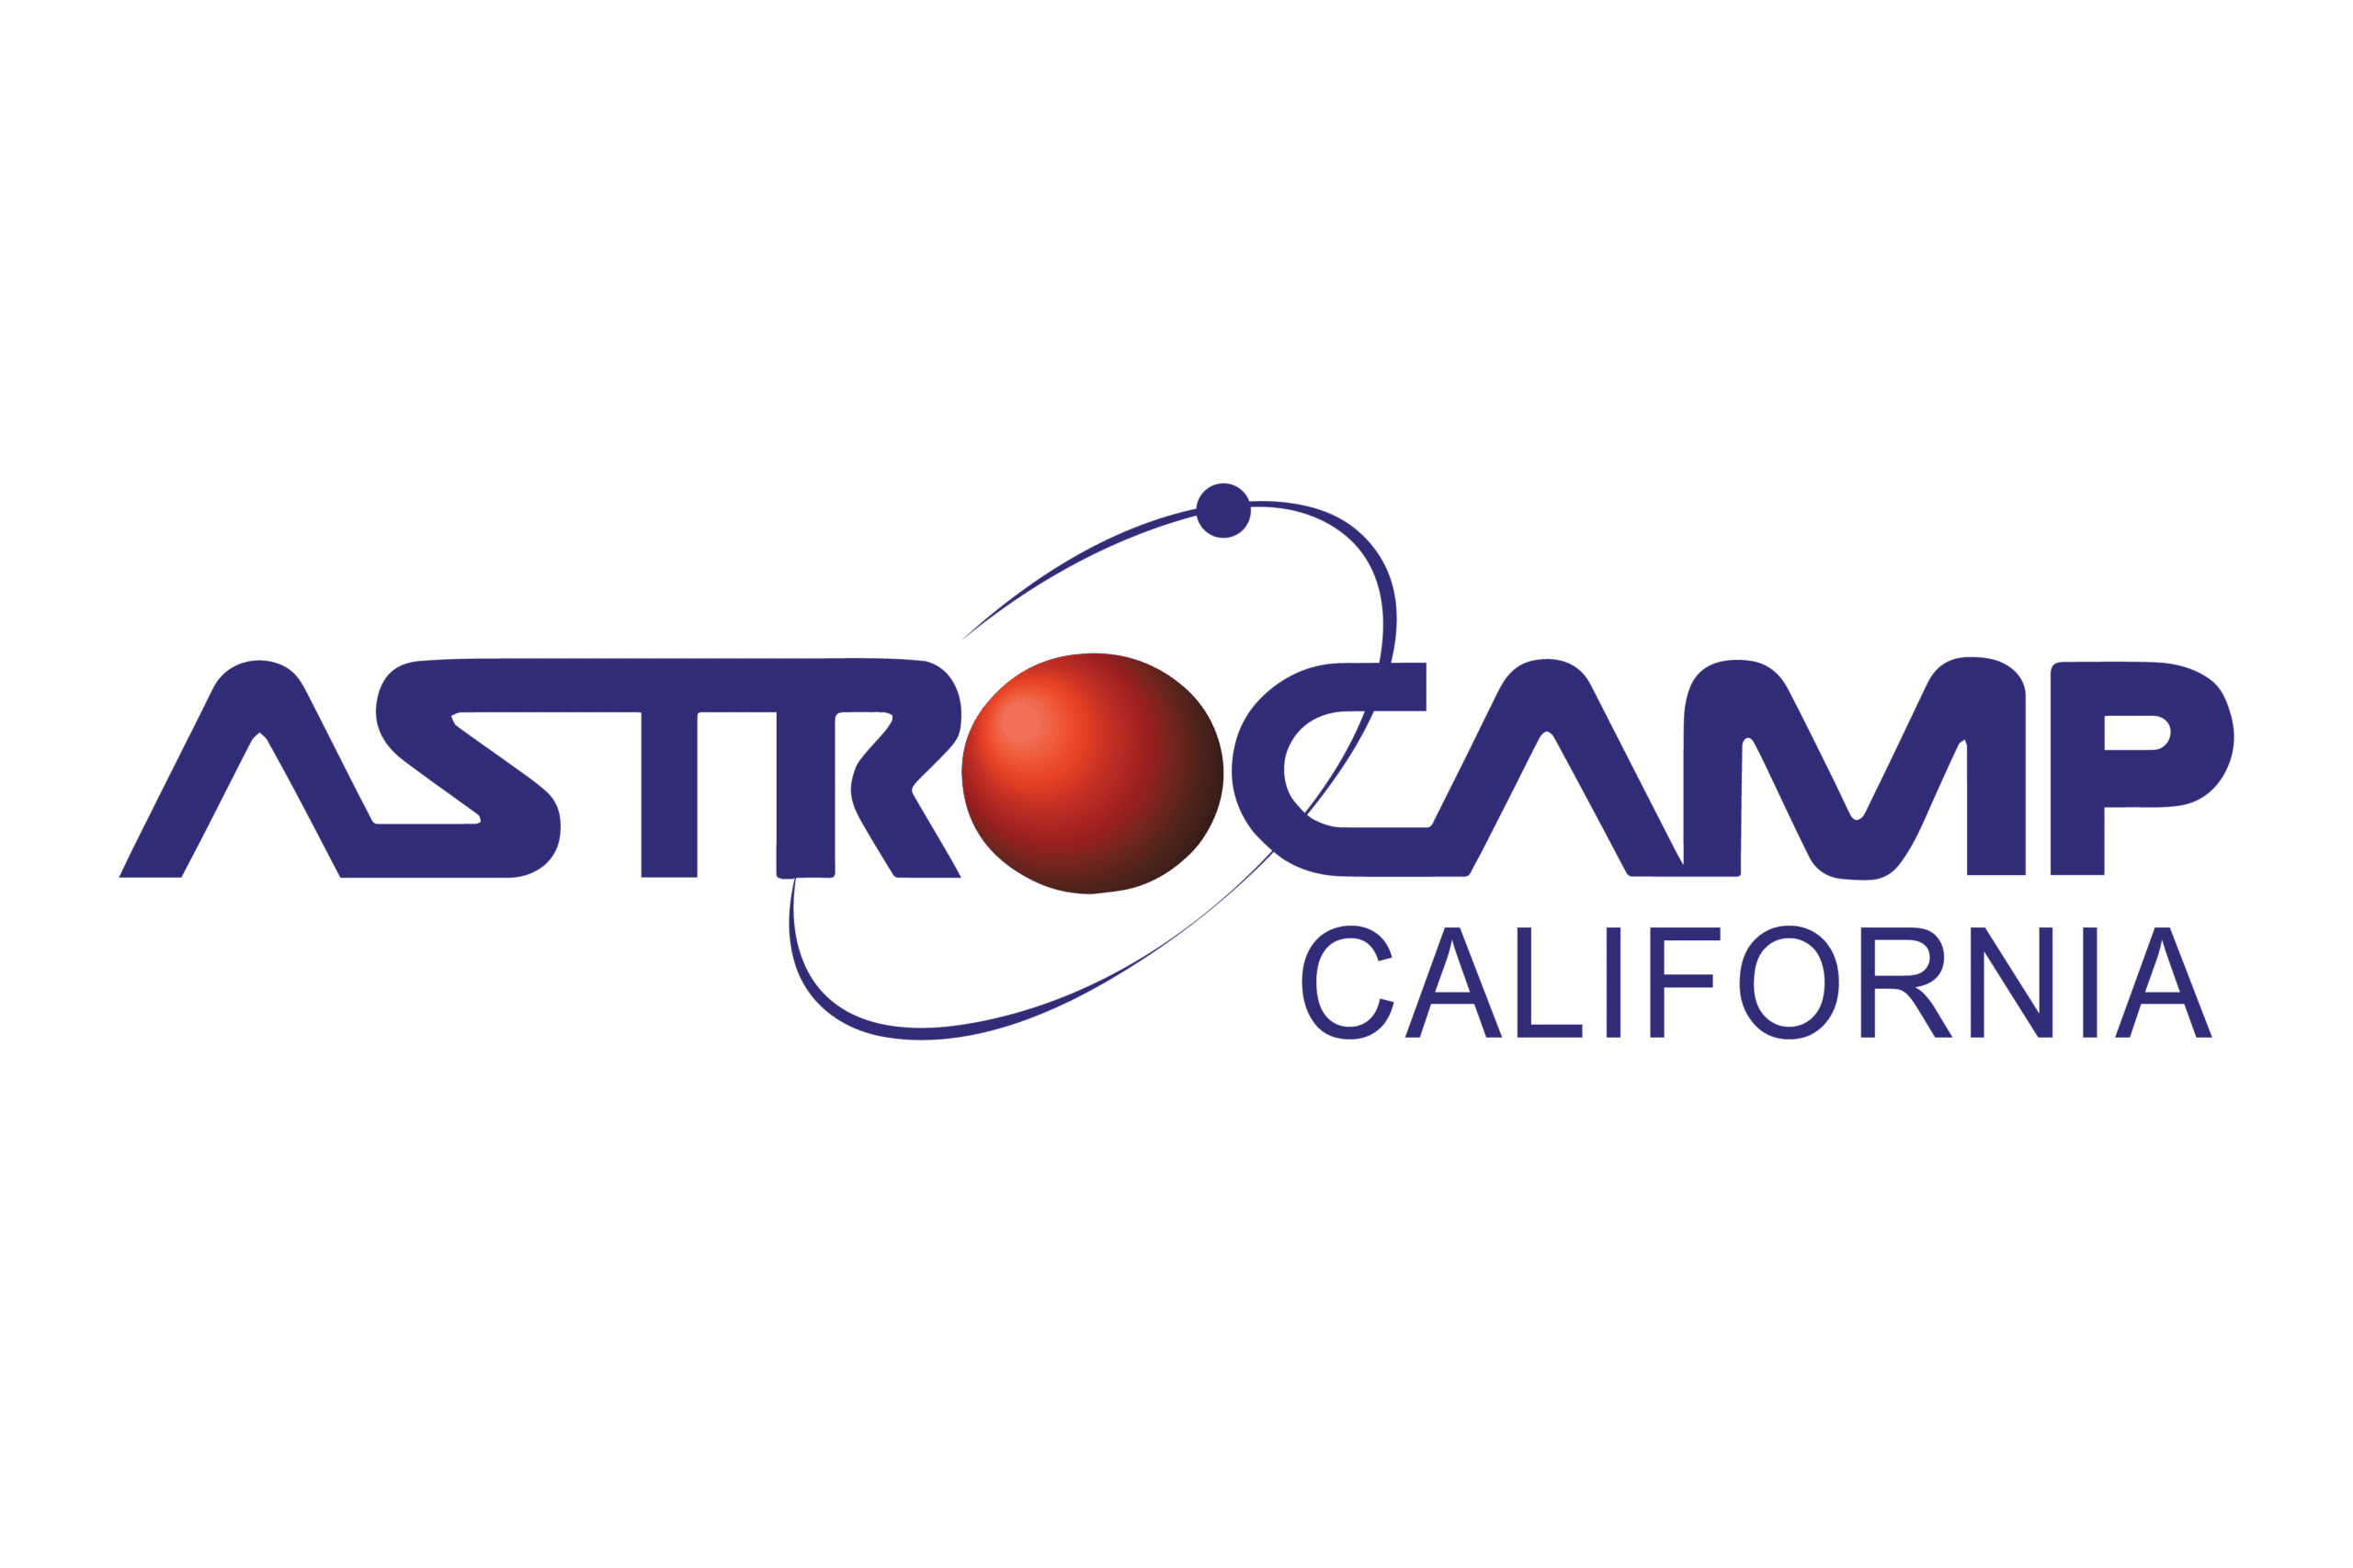 AstroCamp California logo.